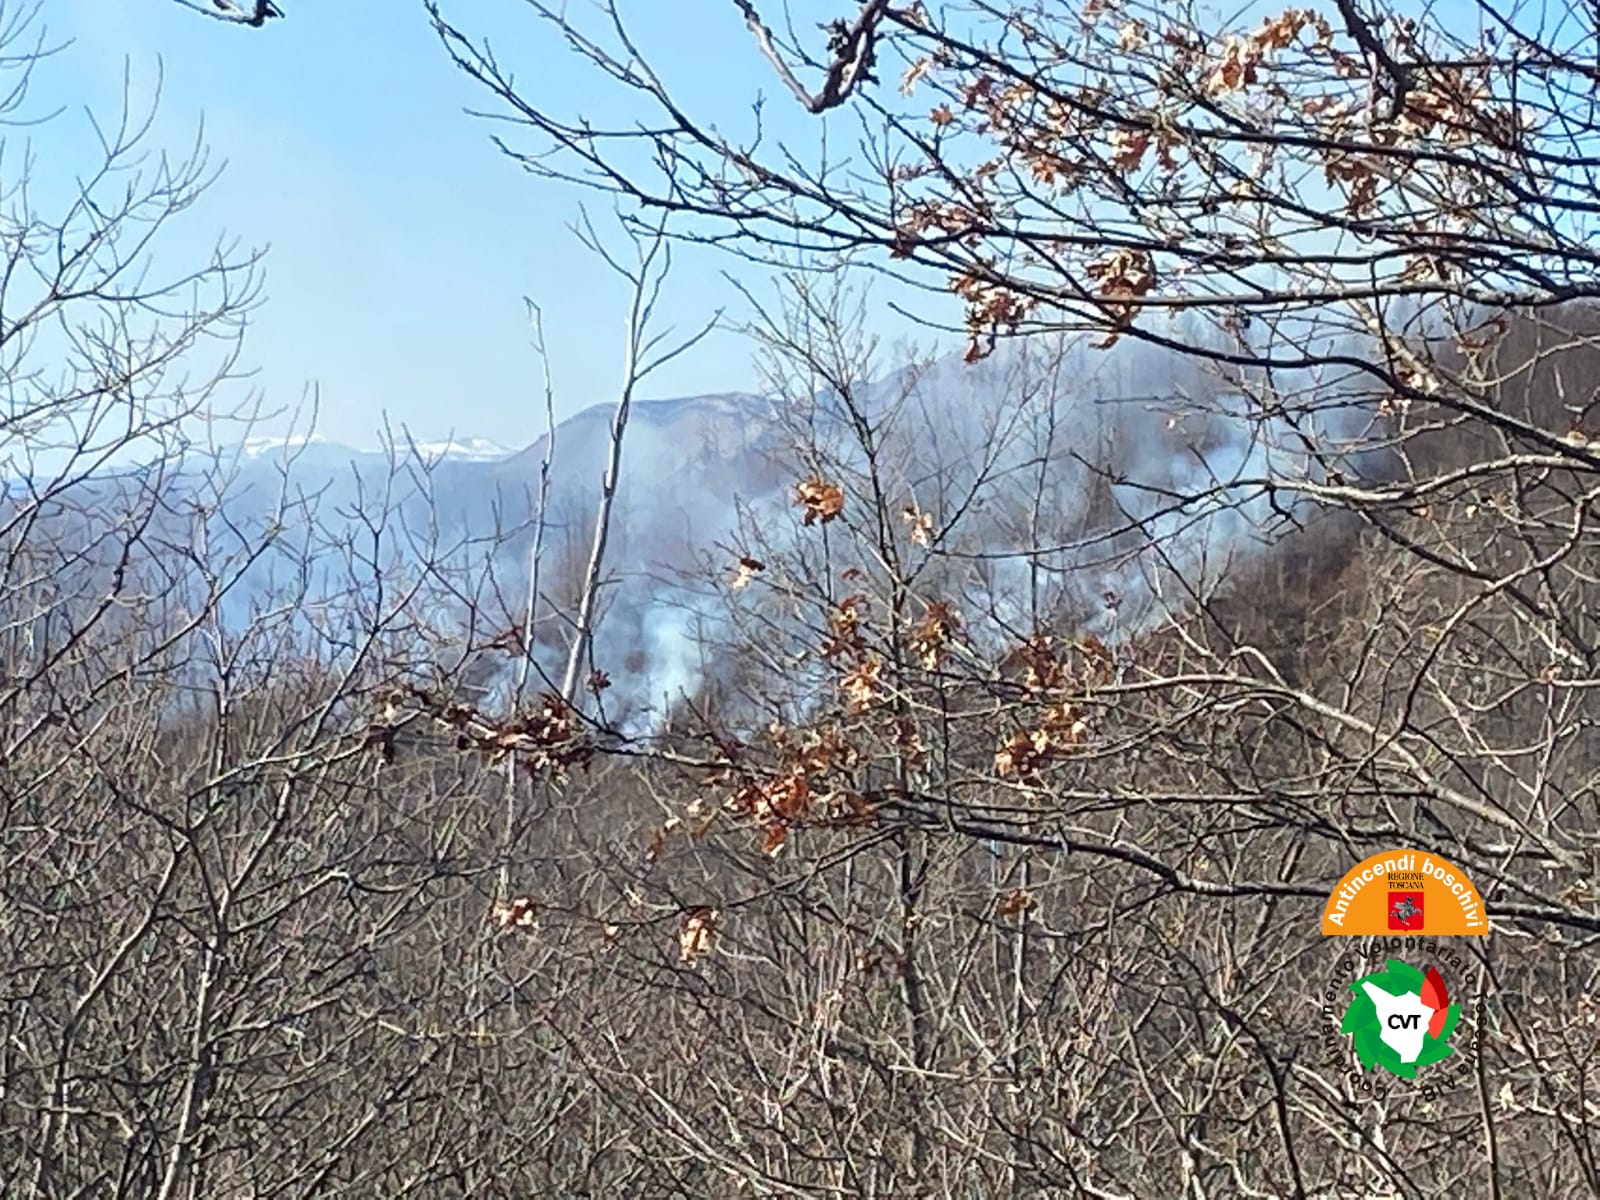 Incendio boschivo a Bagni di Lucca. Sul posto due elicotteri regionali